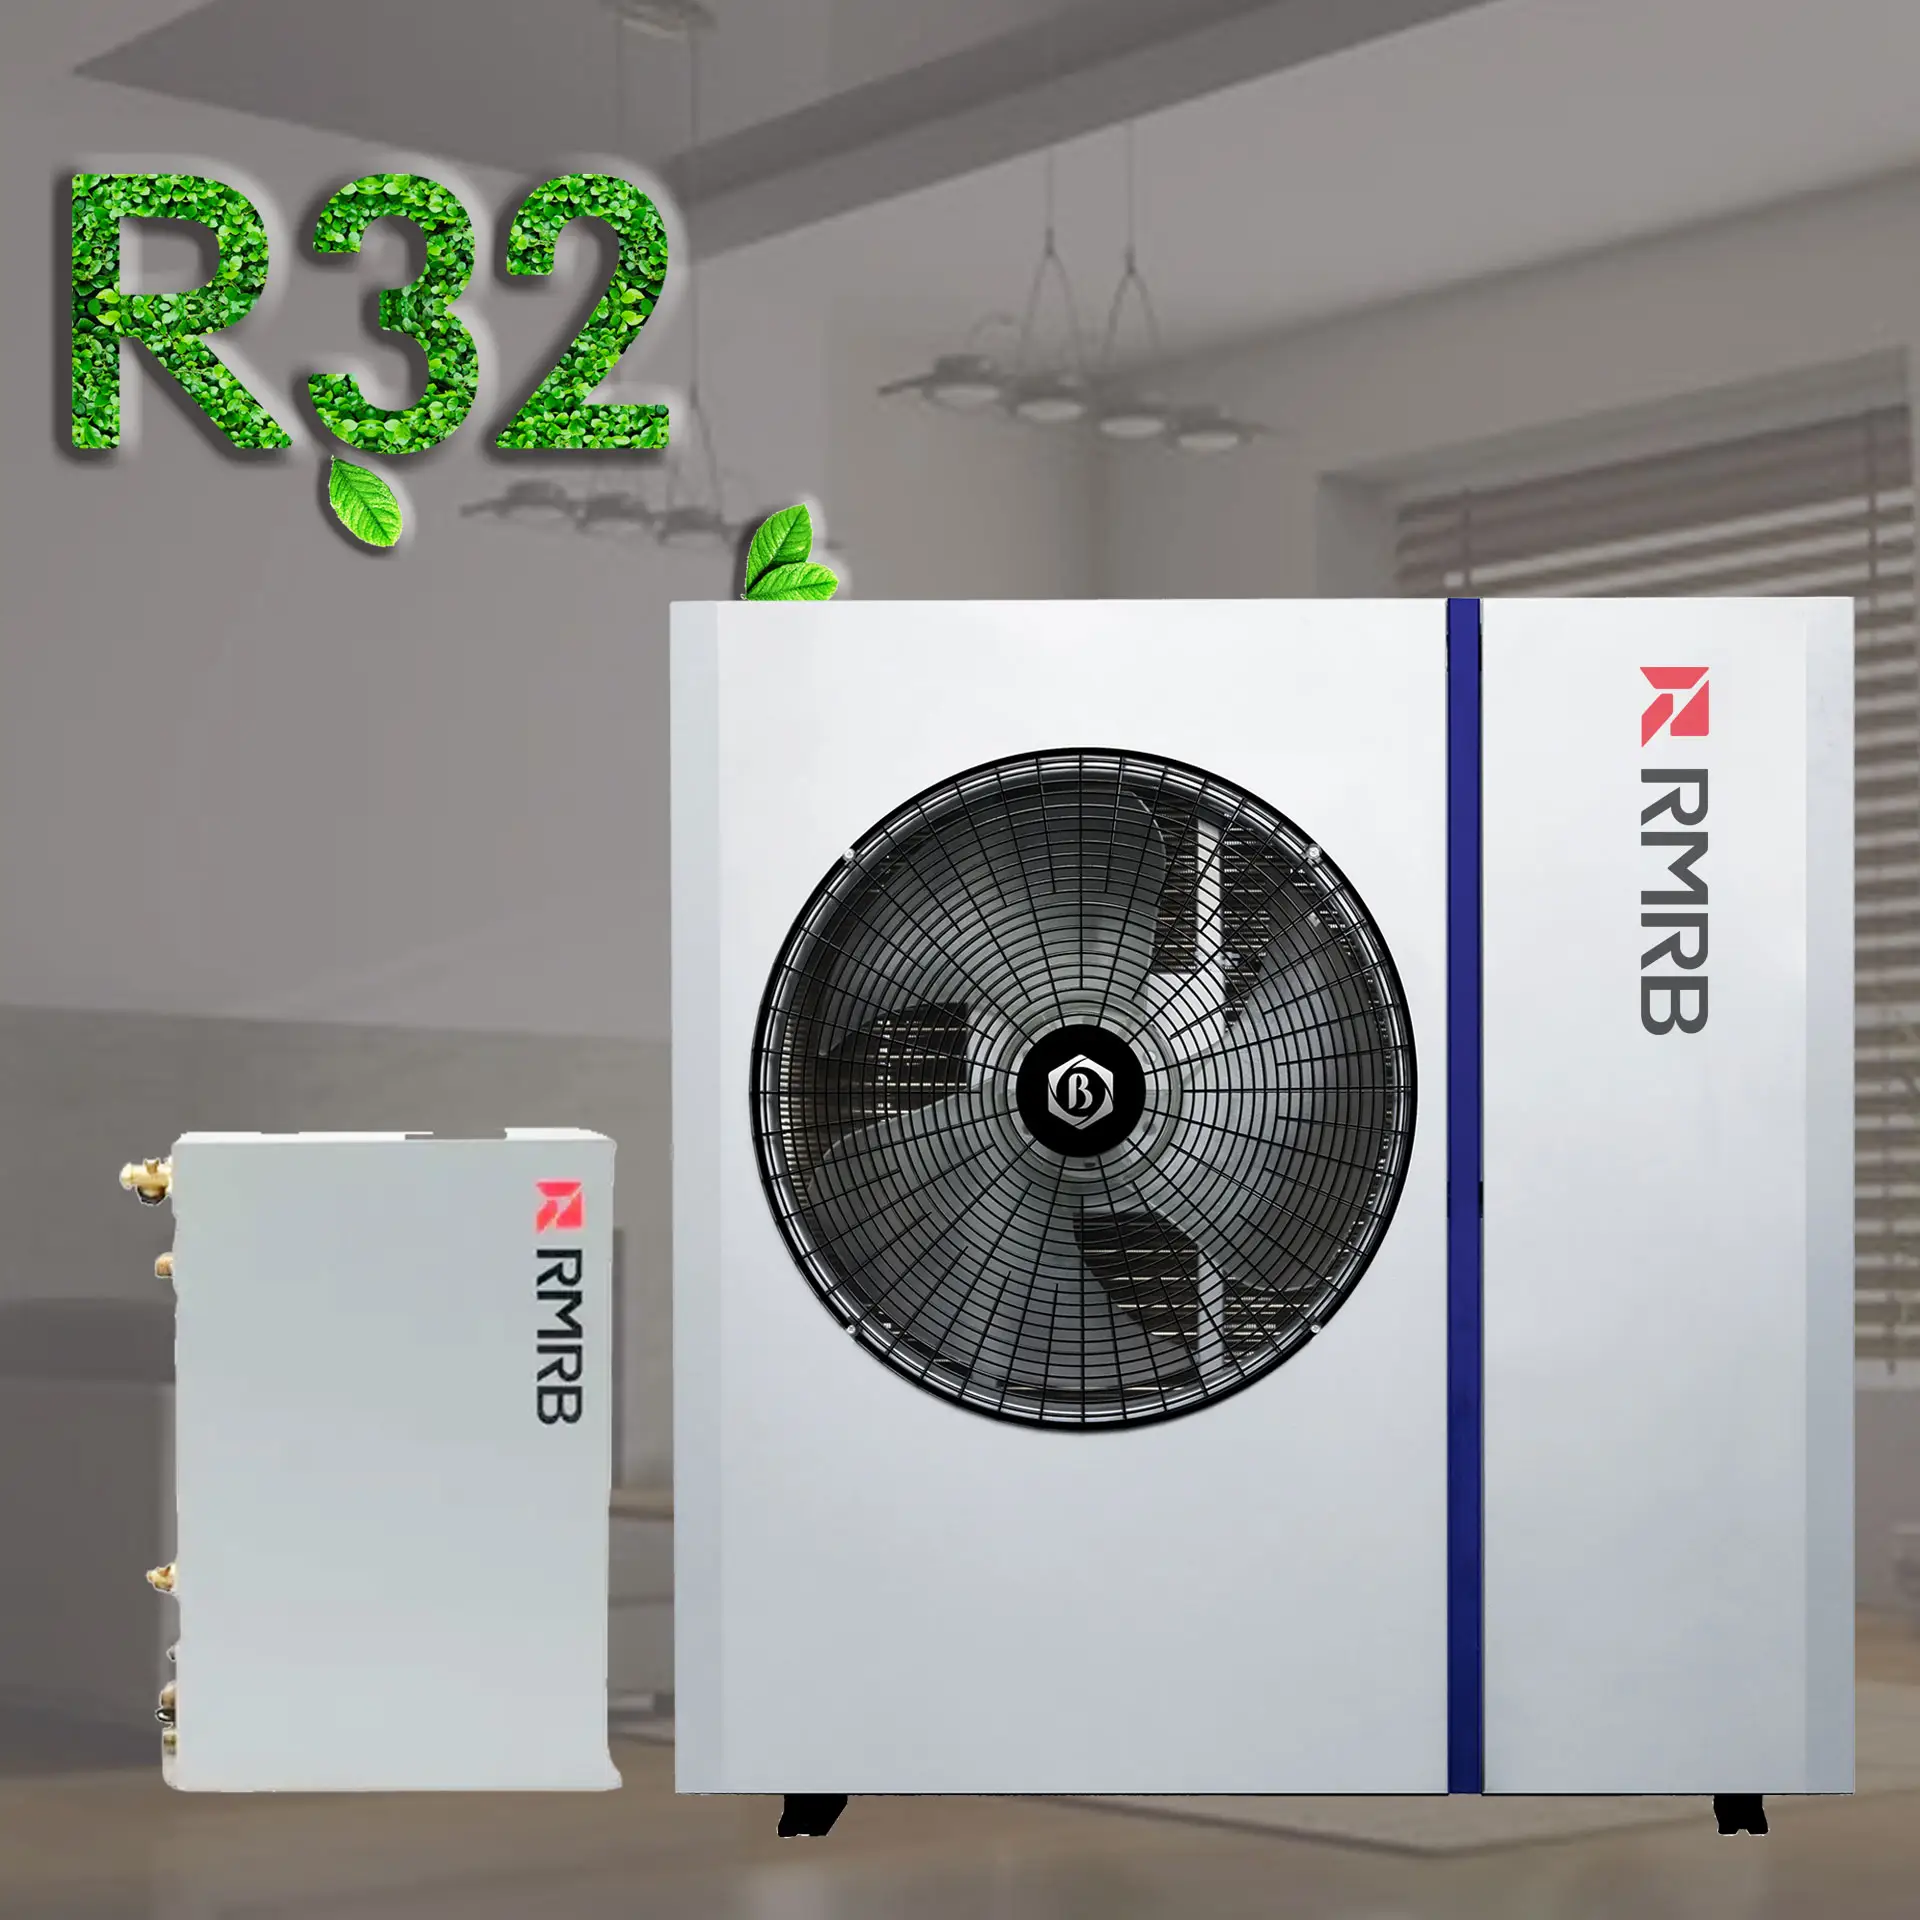 Rmrb 10kw 12kw 15kw Dc Inverter R32 R410a Verwarming 3kw Elektrische Verwarming Lucht Bron Split Warmtepomp Boilers Split Unit